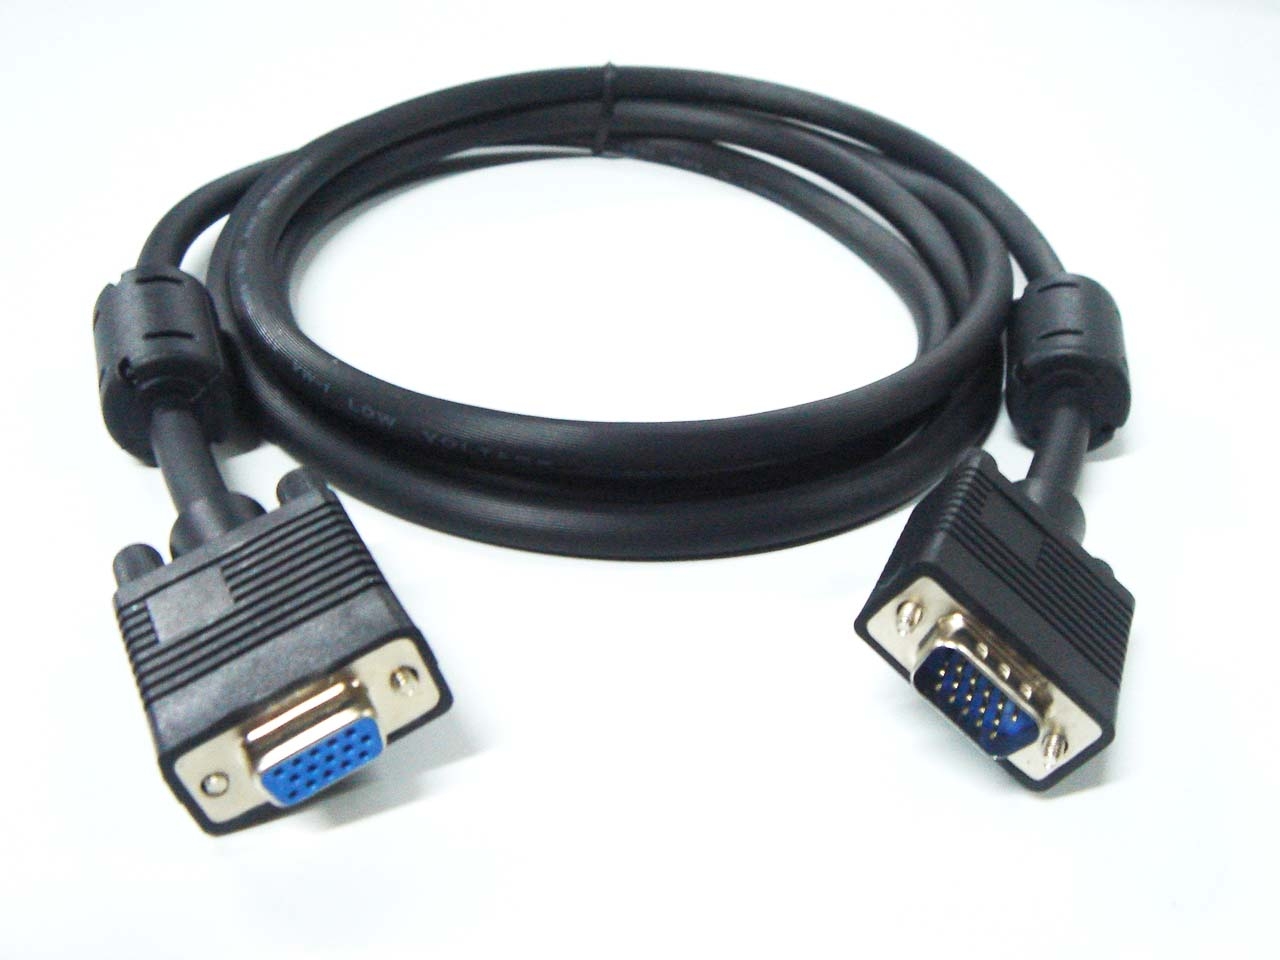 Ноут через hdmi к телевизору. Кабель для монитора к компьютеру VGA HDMI. Кабель для монитора к компьютеру VGA DVI. ВГА шнур от монитора к компьютеру. Провод HDMI VGA от компьютера к монитору.